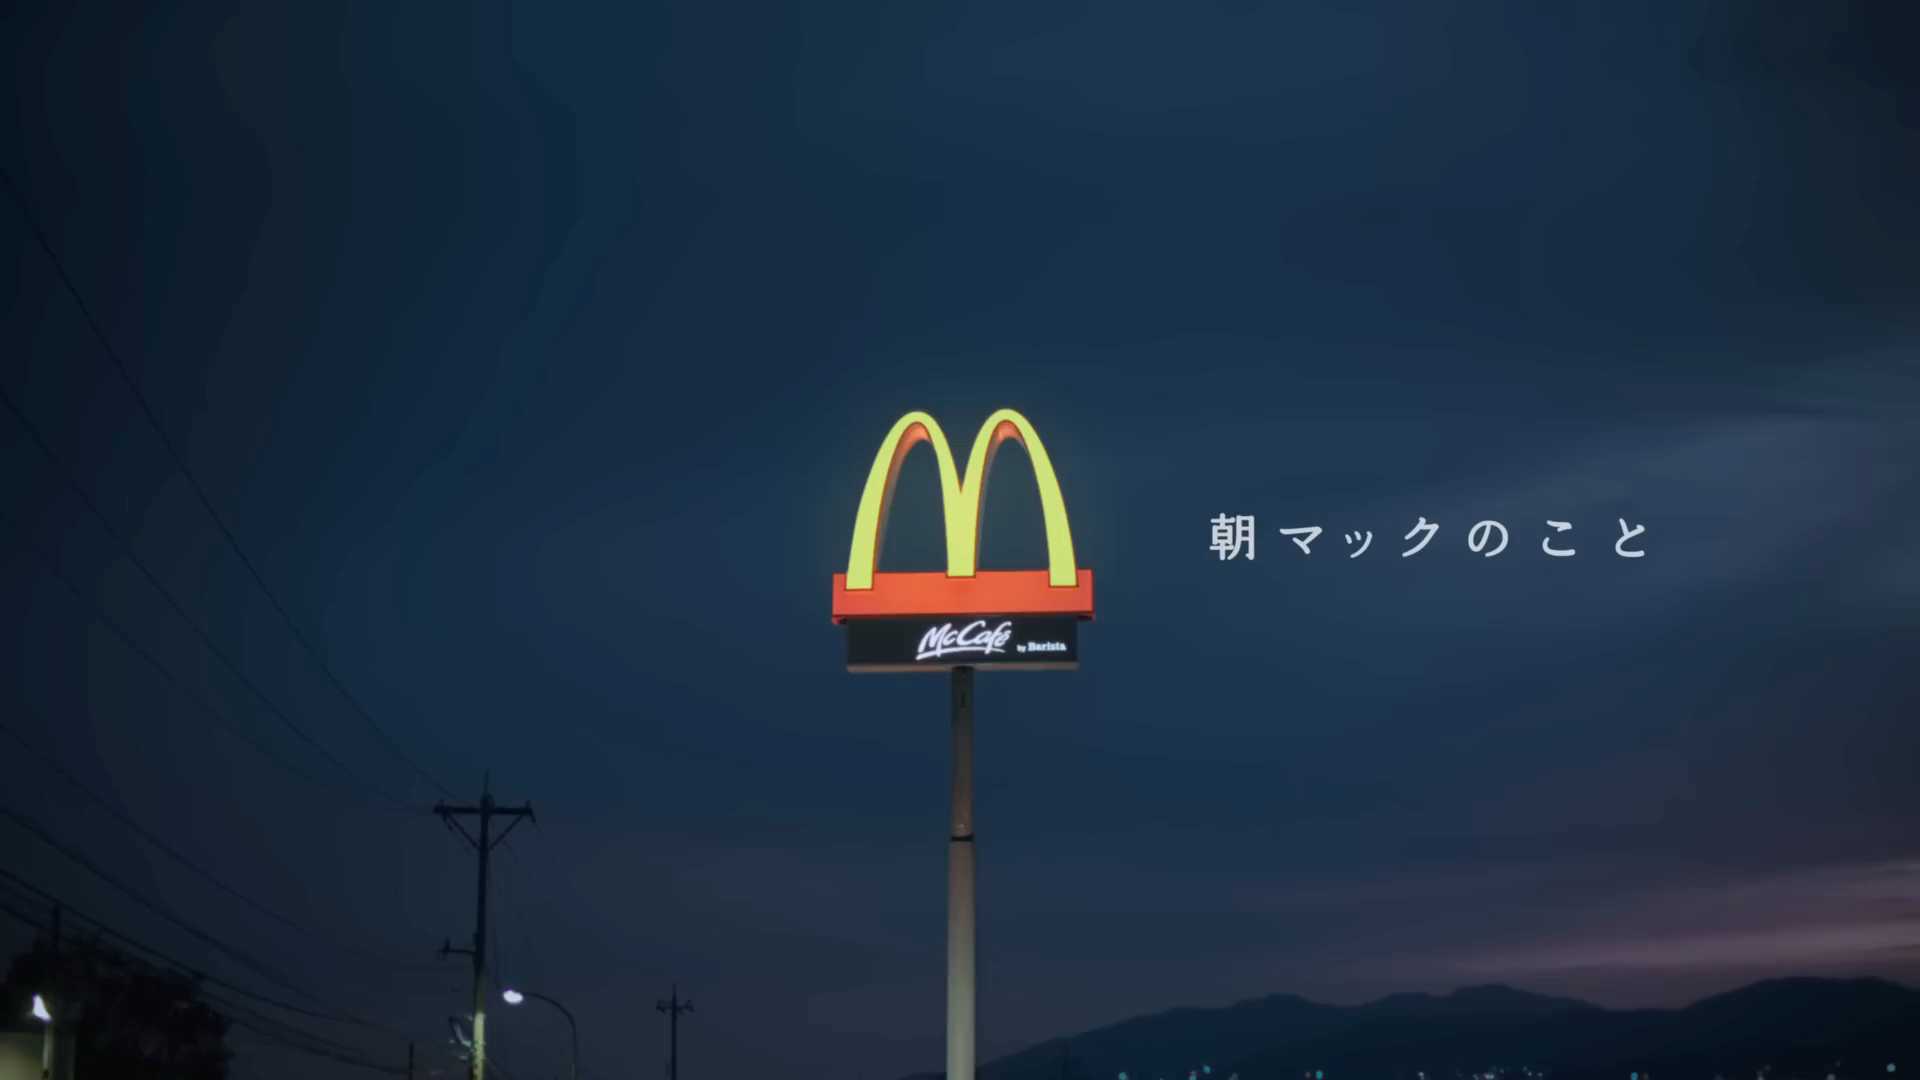 日本麦当劳温情广告《诉说平凡时光》